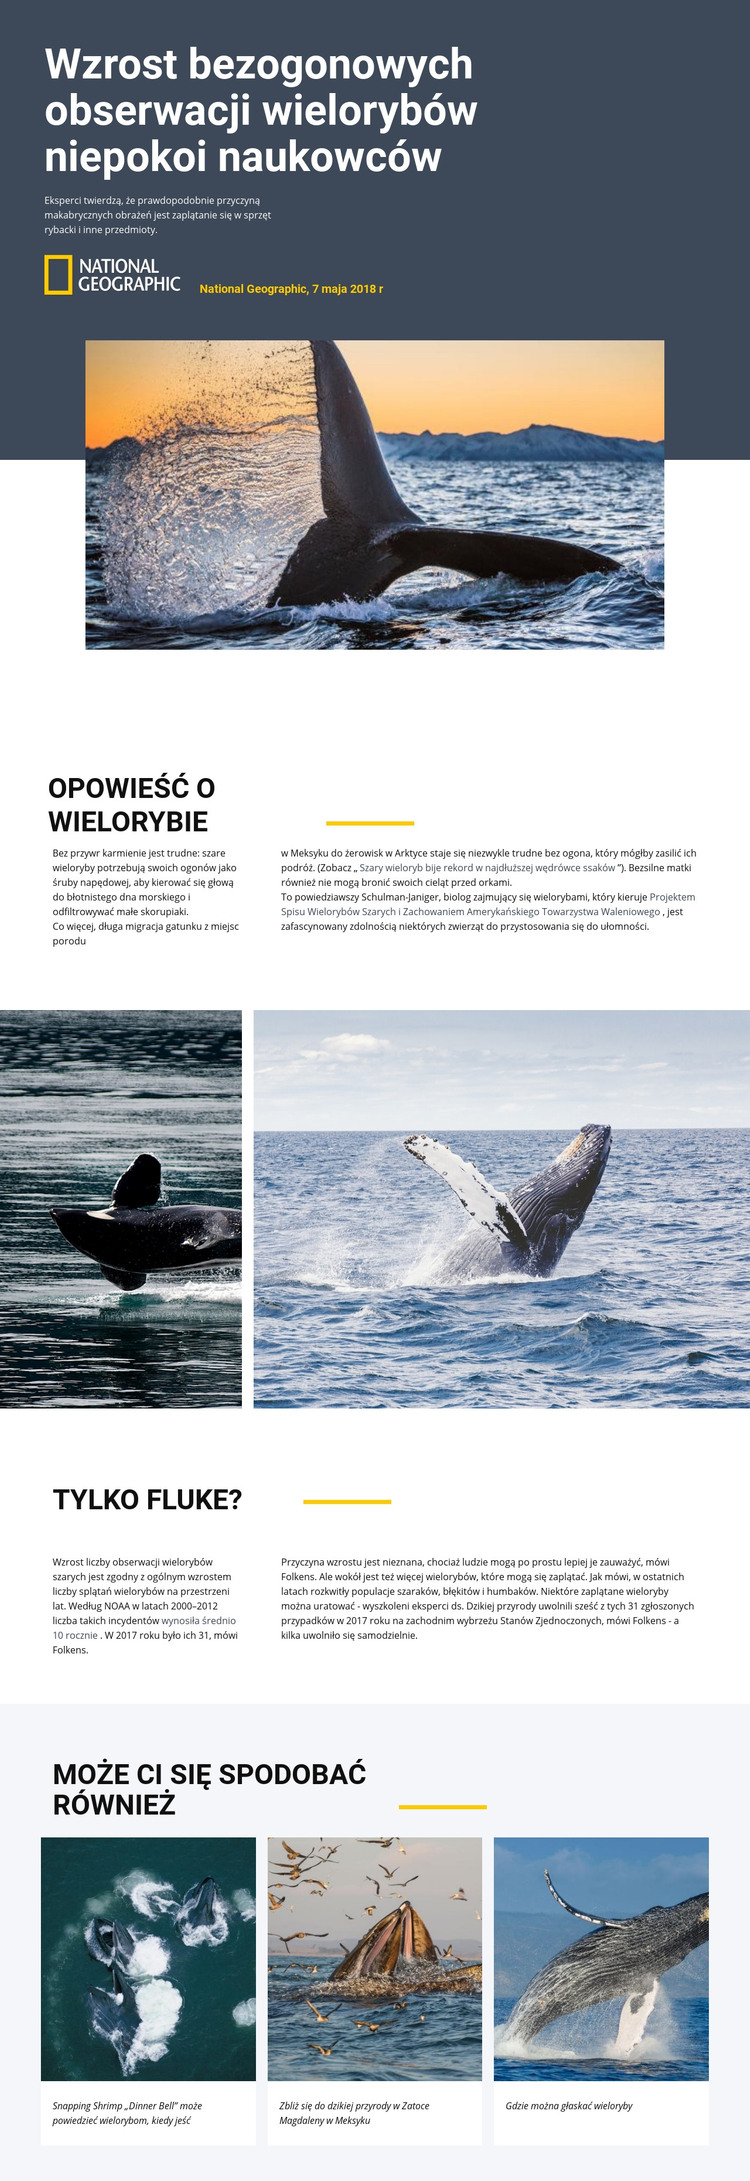 Centrum obserwacji wielorybów Szablon HTML